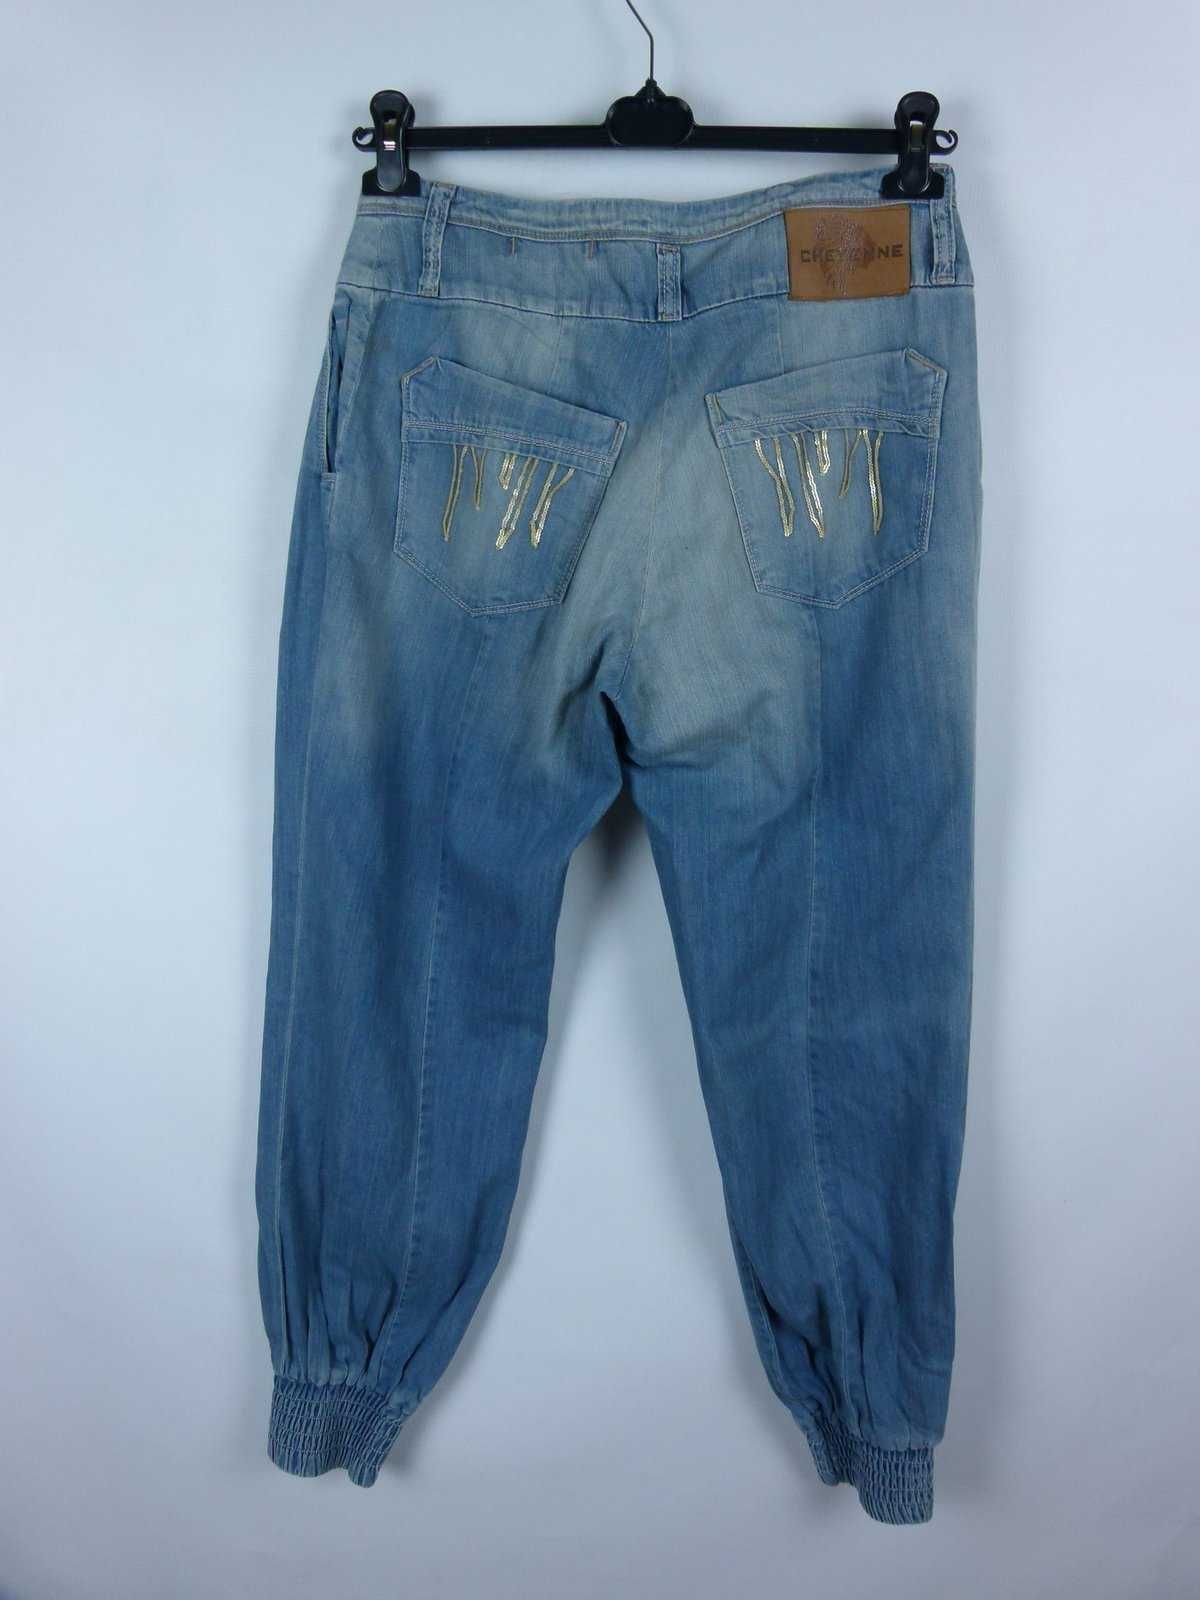 Cheyenne Jeans spodnie joggery dżins / 31